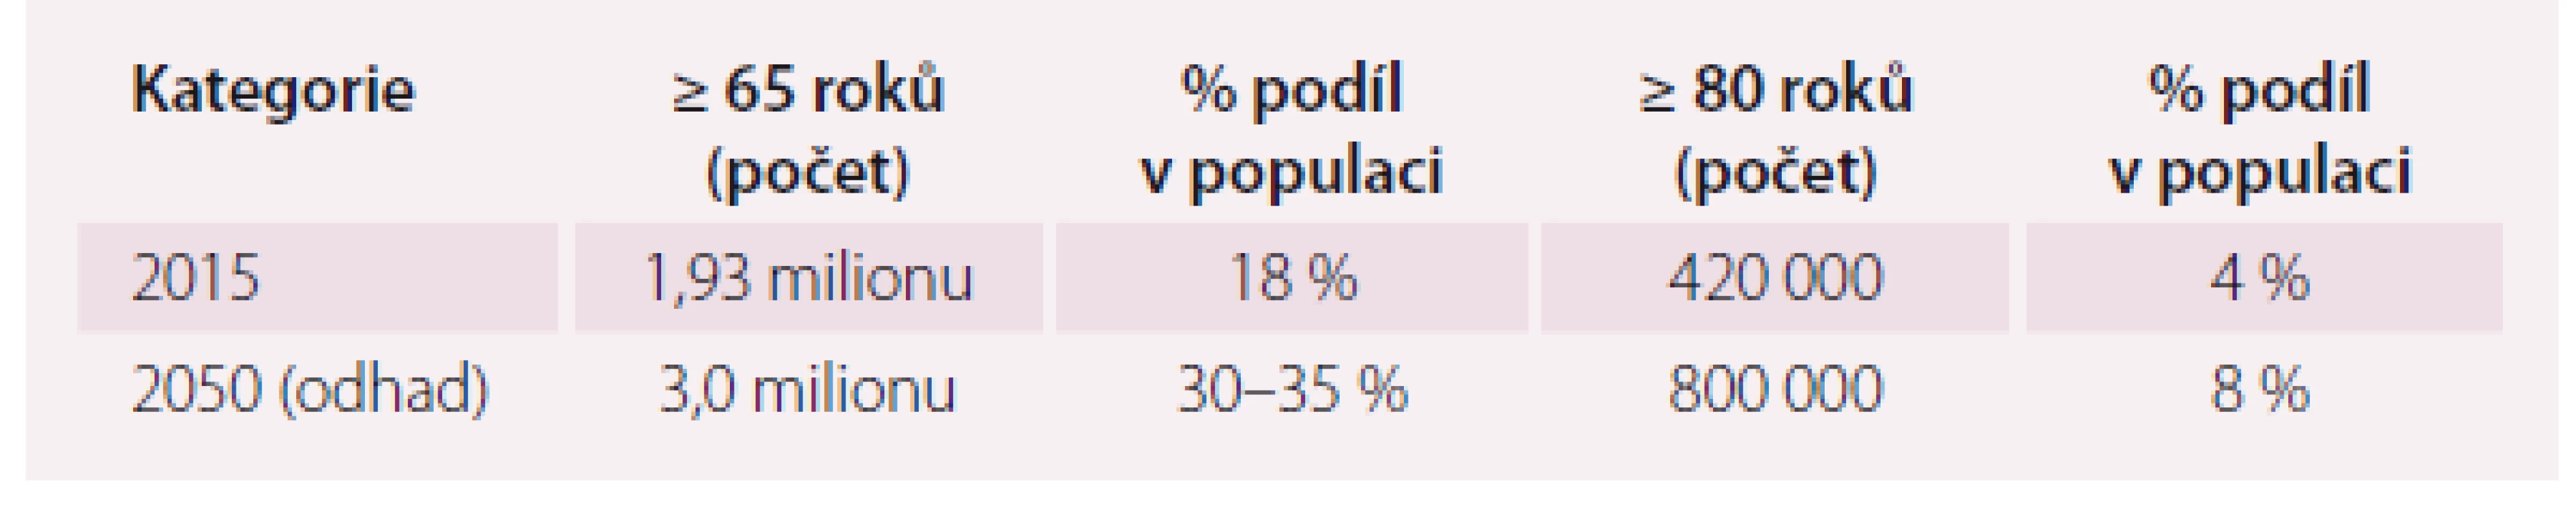 Demografické ukazatele obyvatel vyššího věku v ČR a výhled do roku 2050 [1].